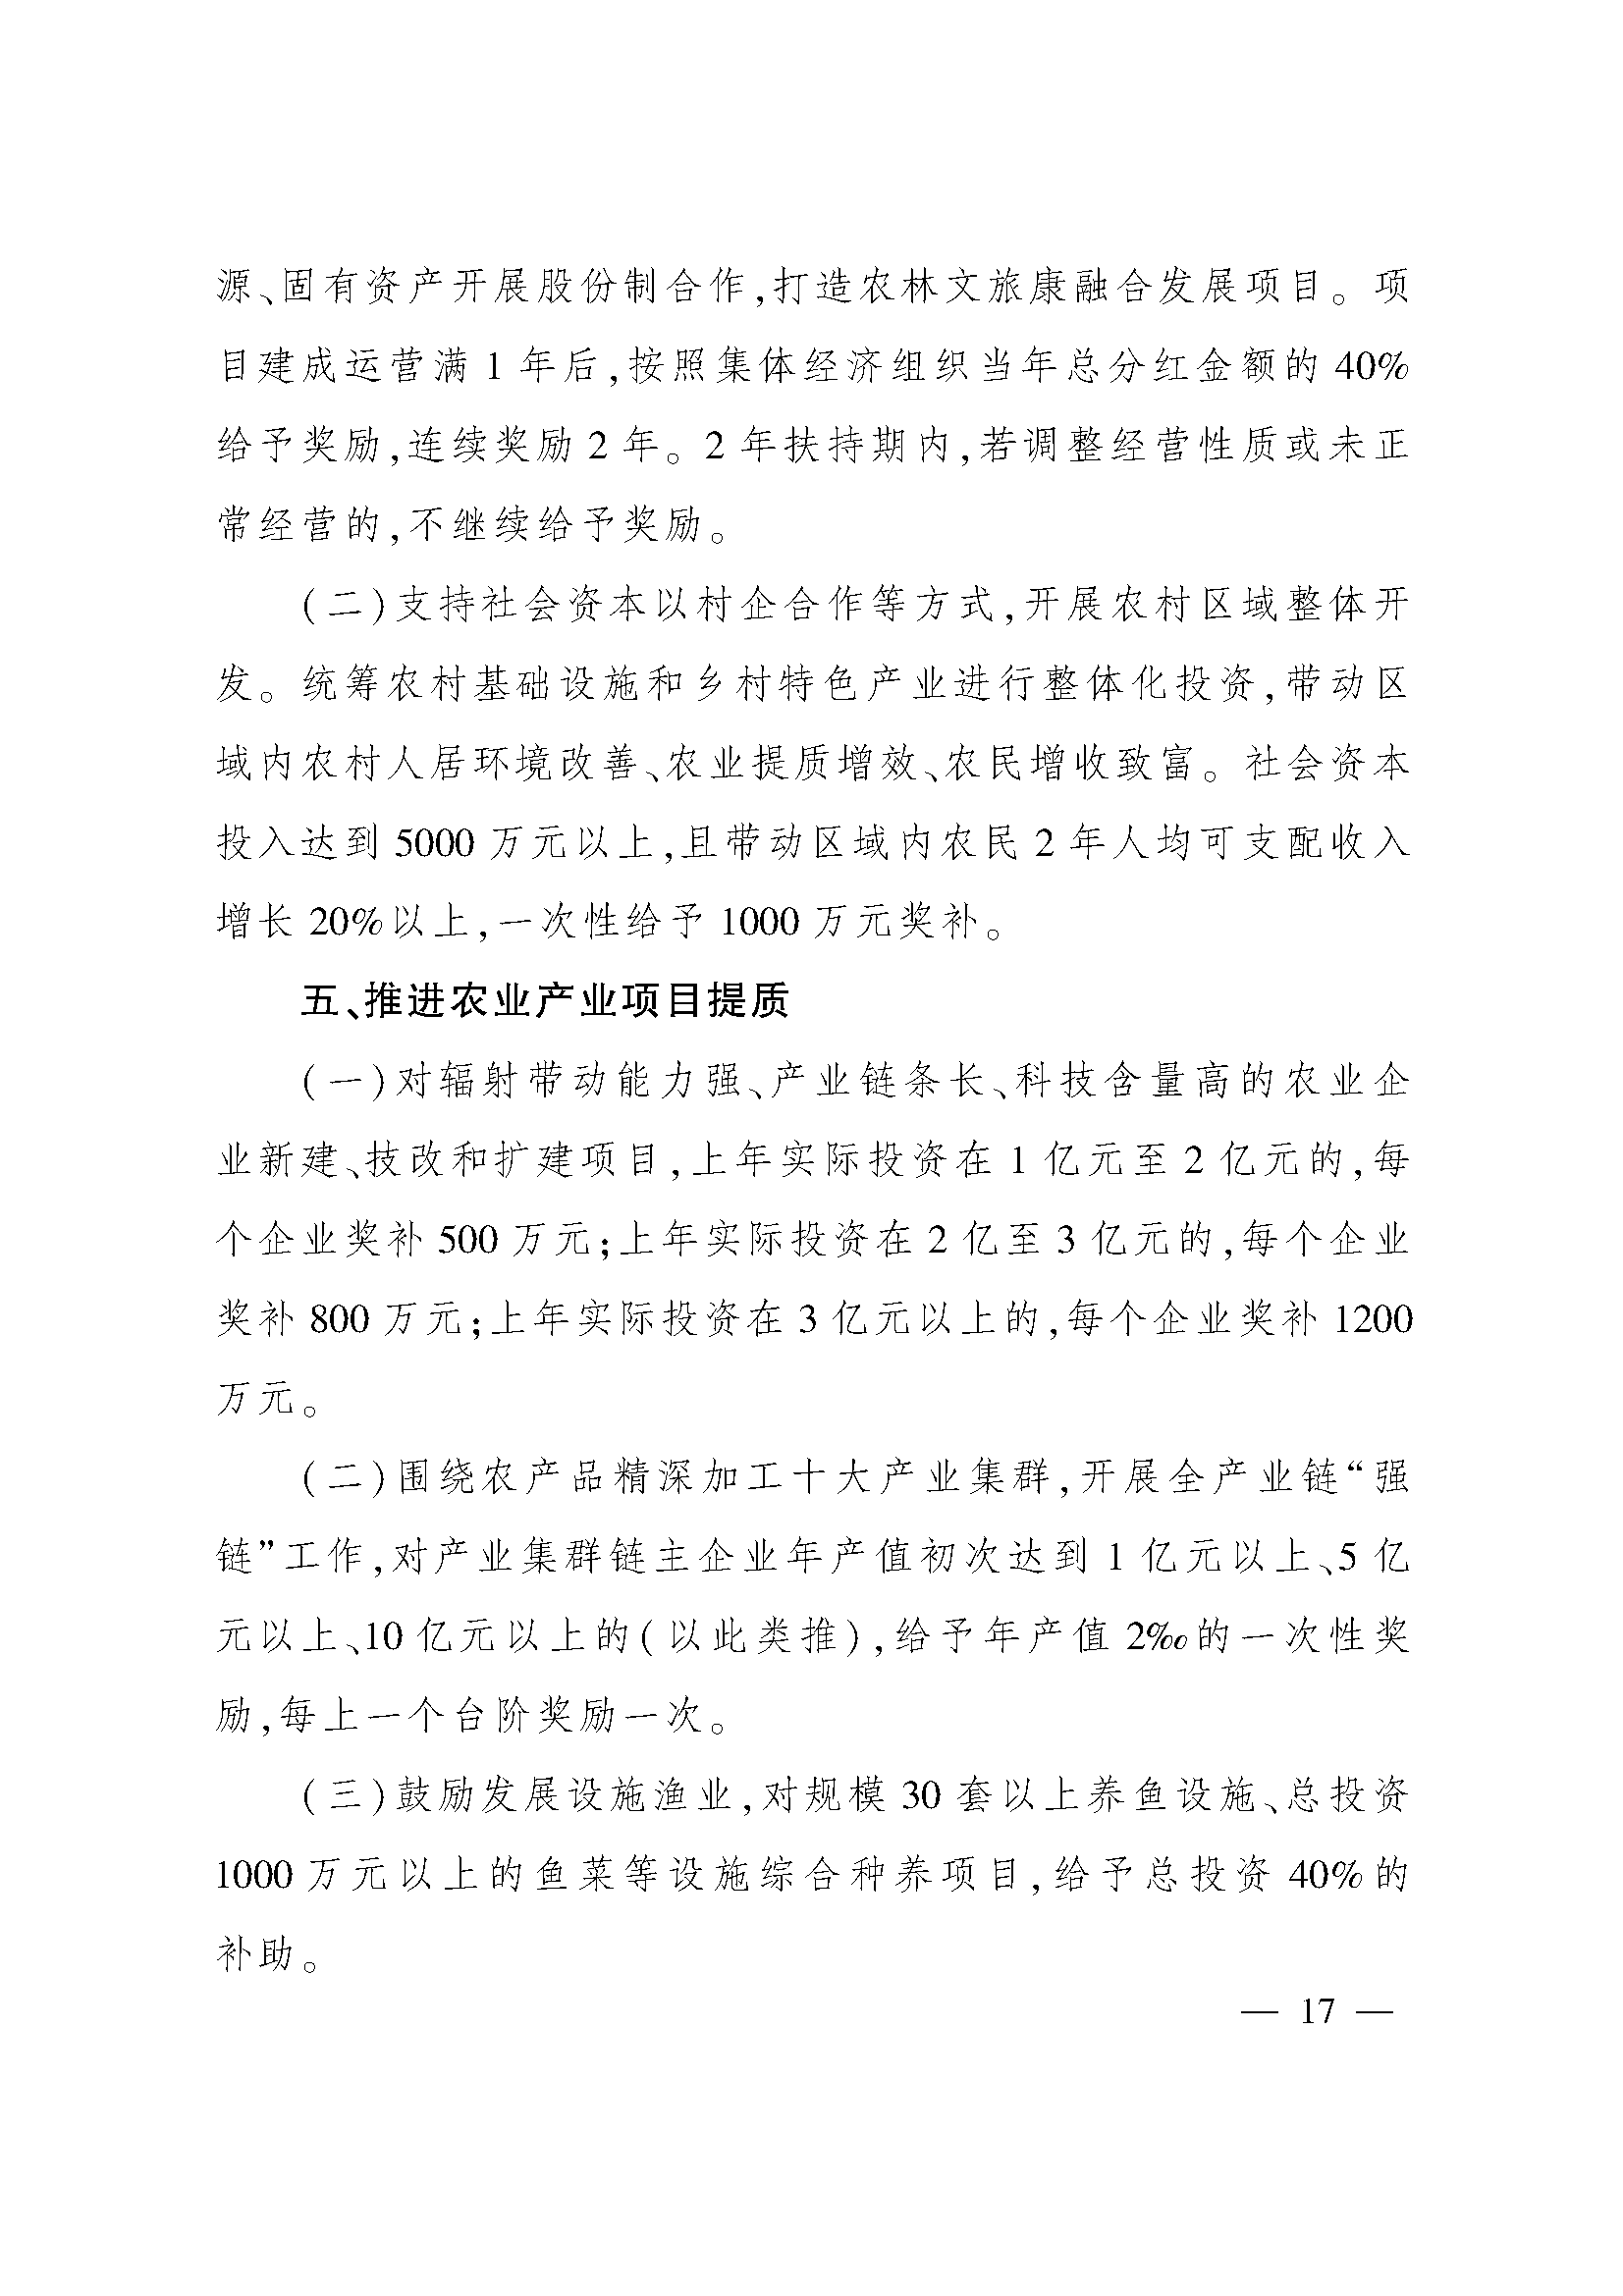 太原市人民政府办公室关于印发太原市招商引资若干措施的通知(图17)